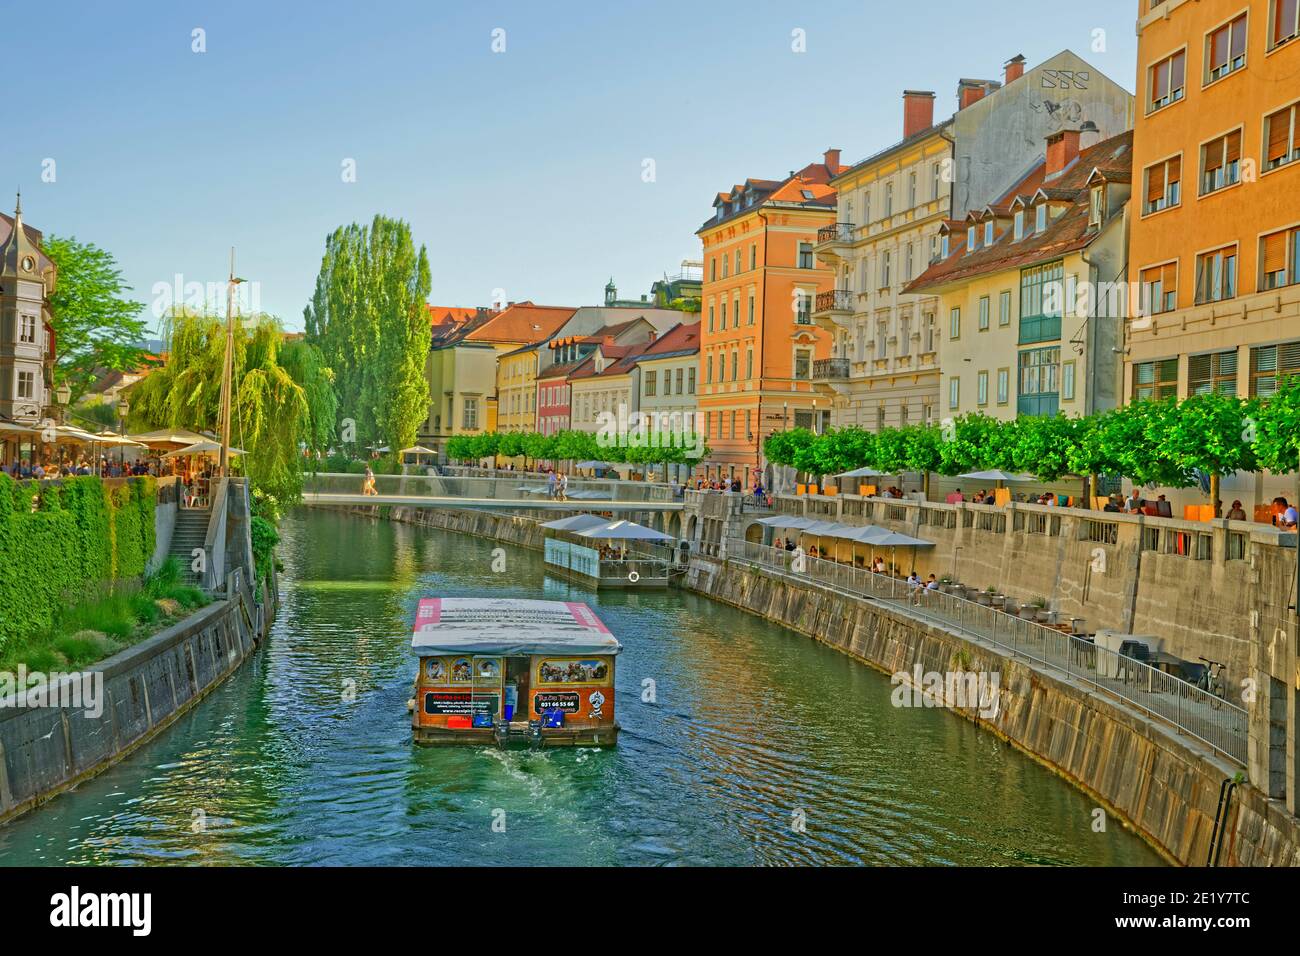 River Ljubljanica in Ljubljana city centre, capital city of Slovenia. Stock Photo